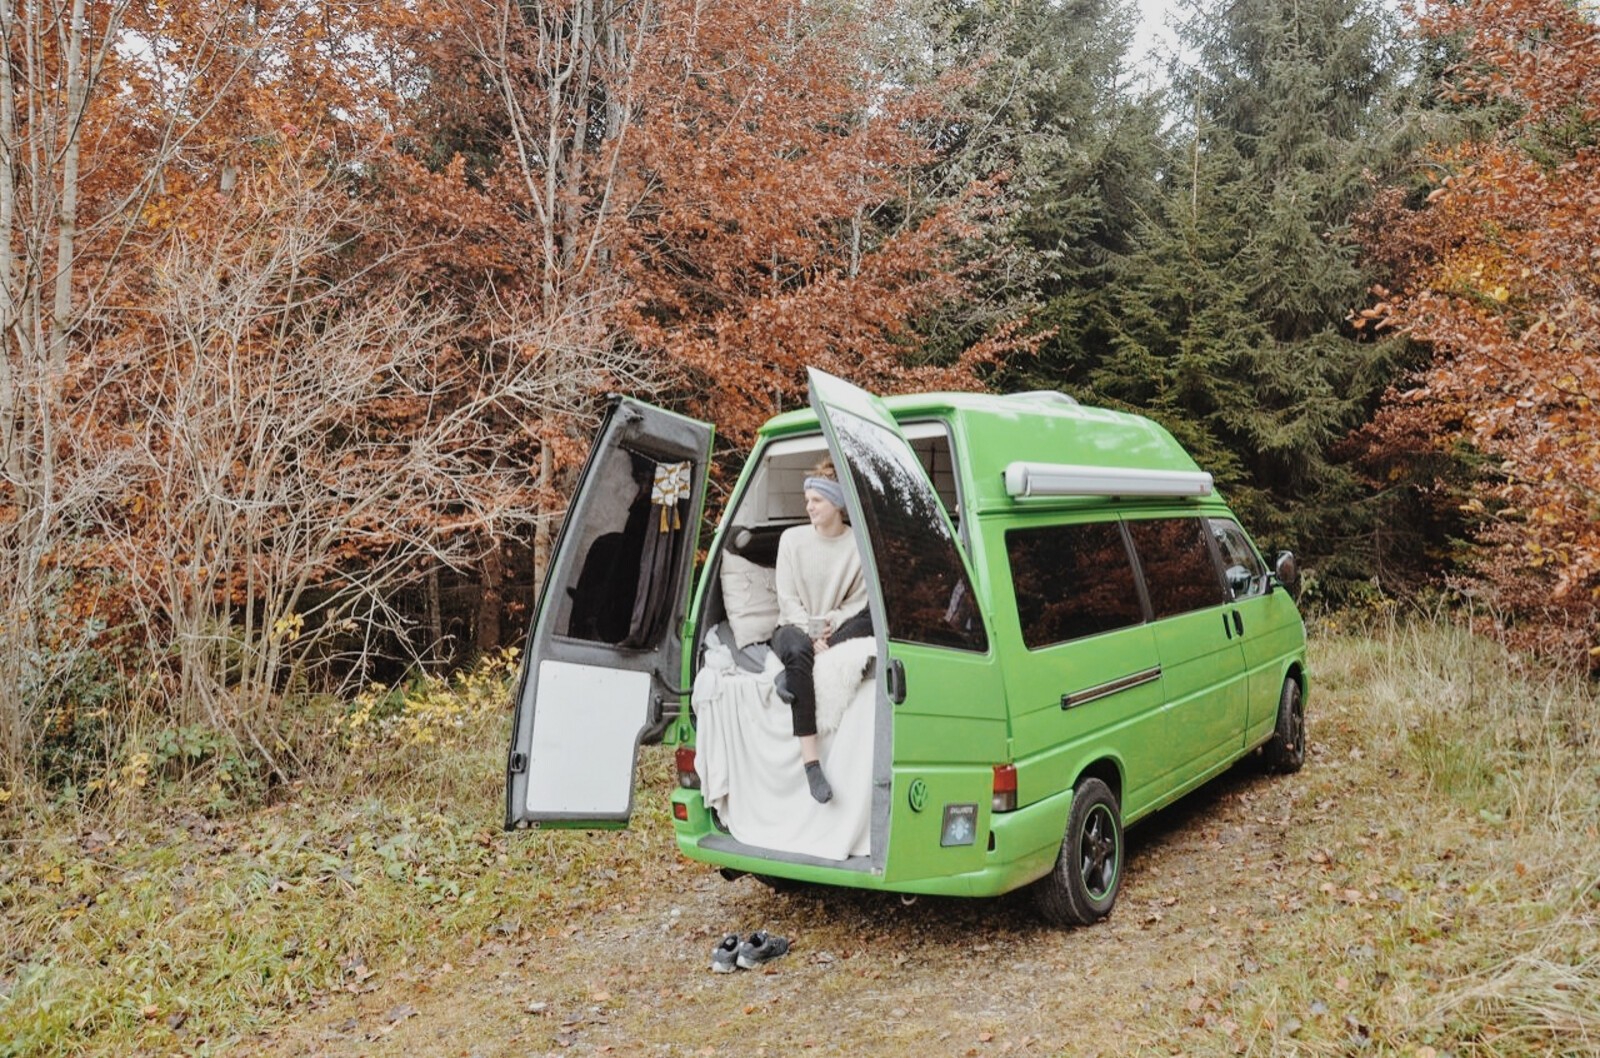 Rent campervan in St. Gallen with 2 sleeping spots from 917 EUR